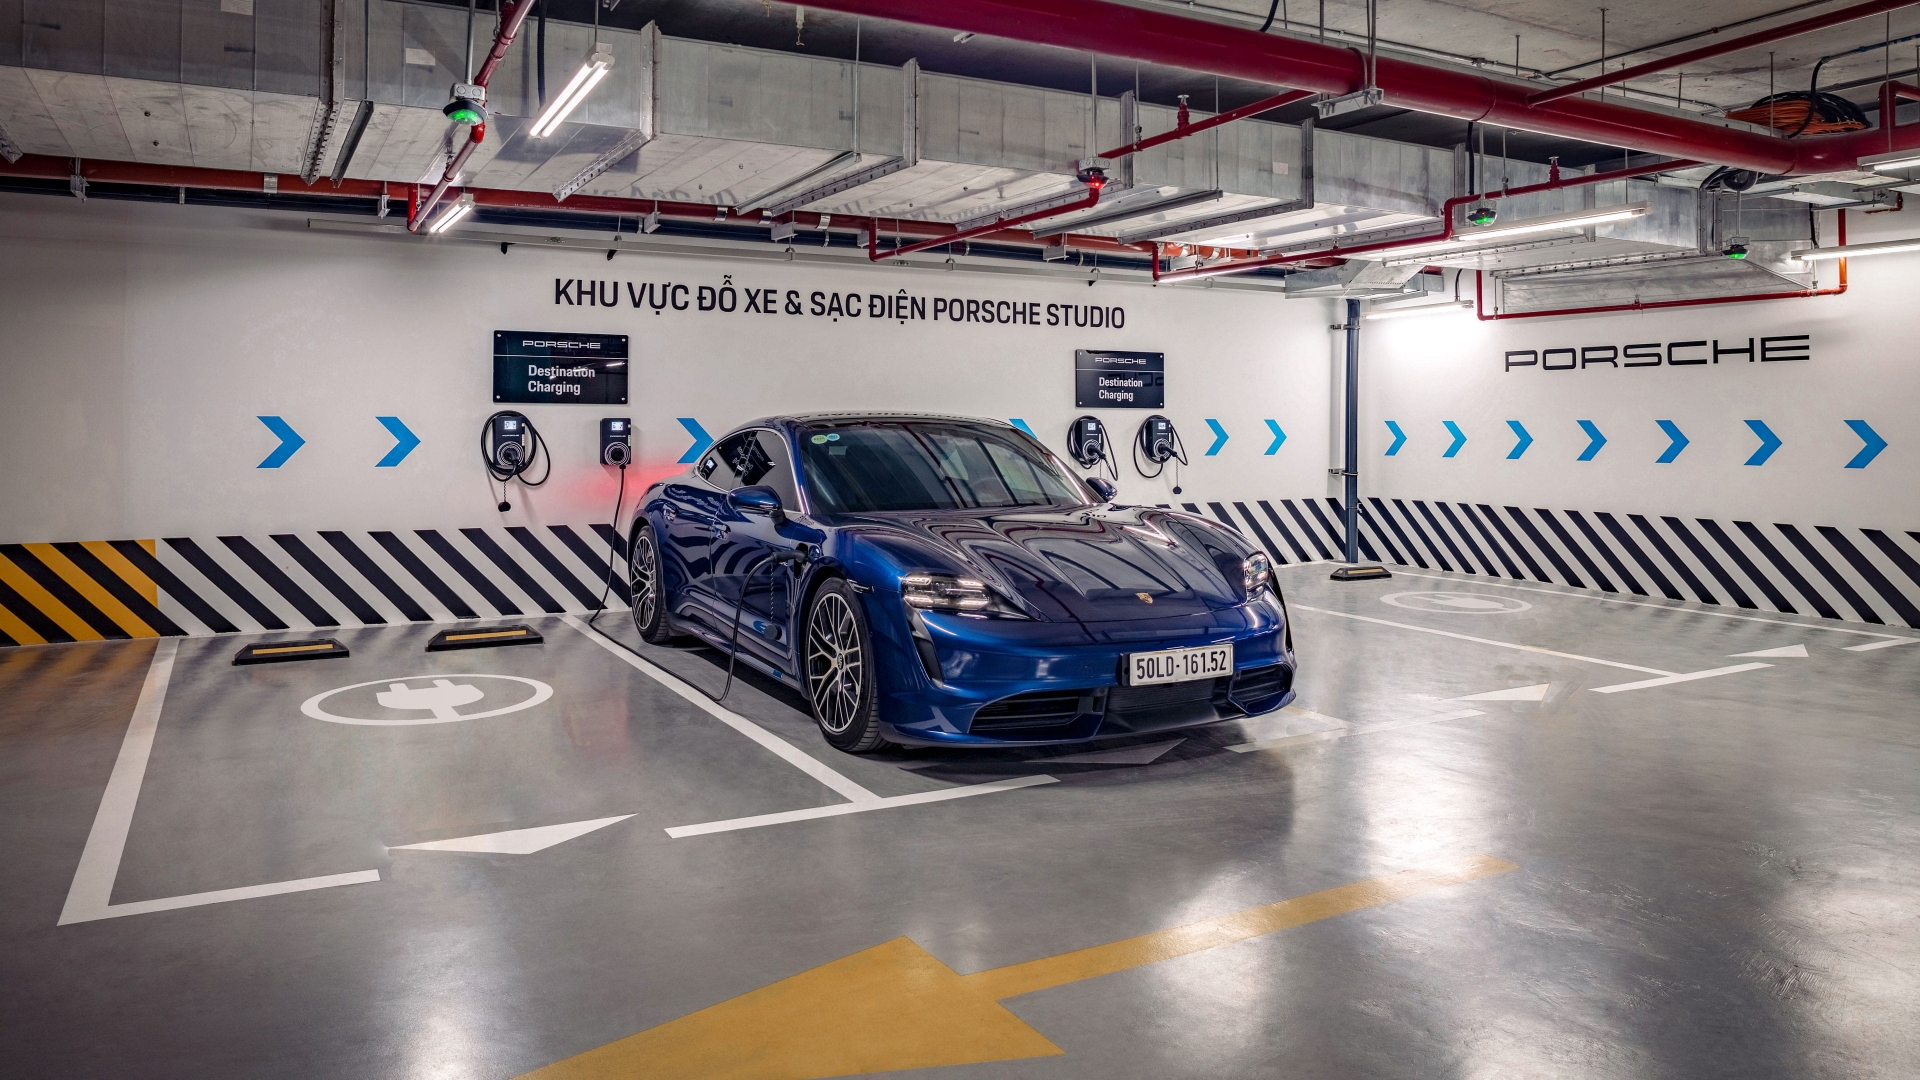 Trạm sạc xe điện của Porsche được bố trí dưới hầm gửi xe